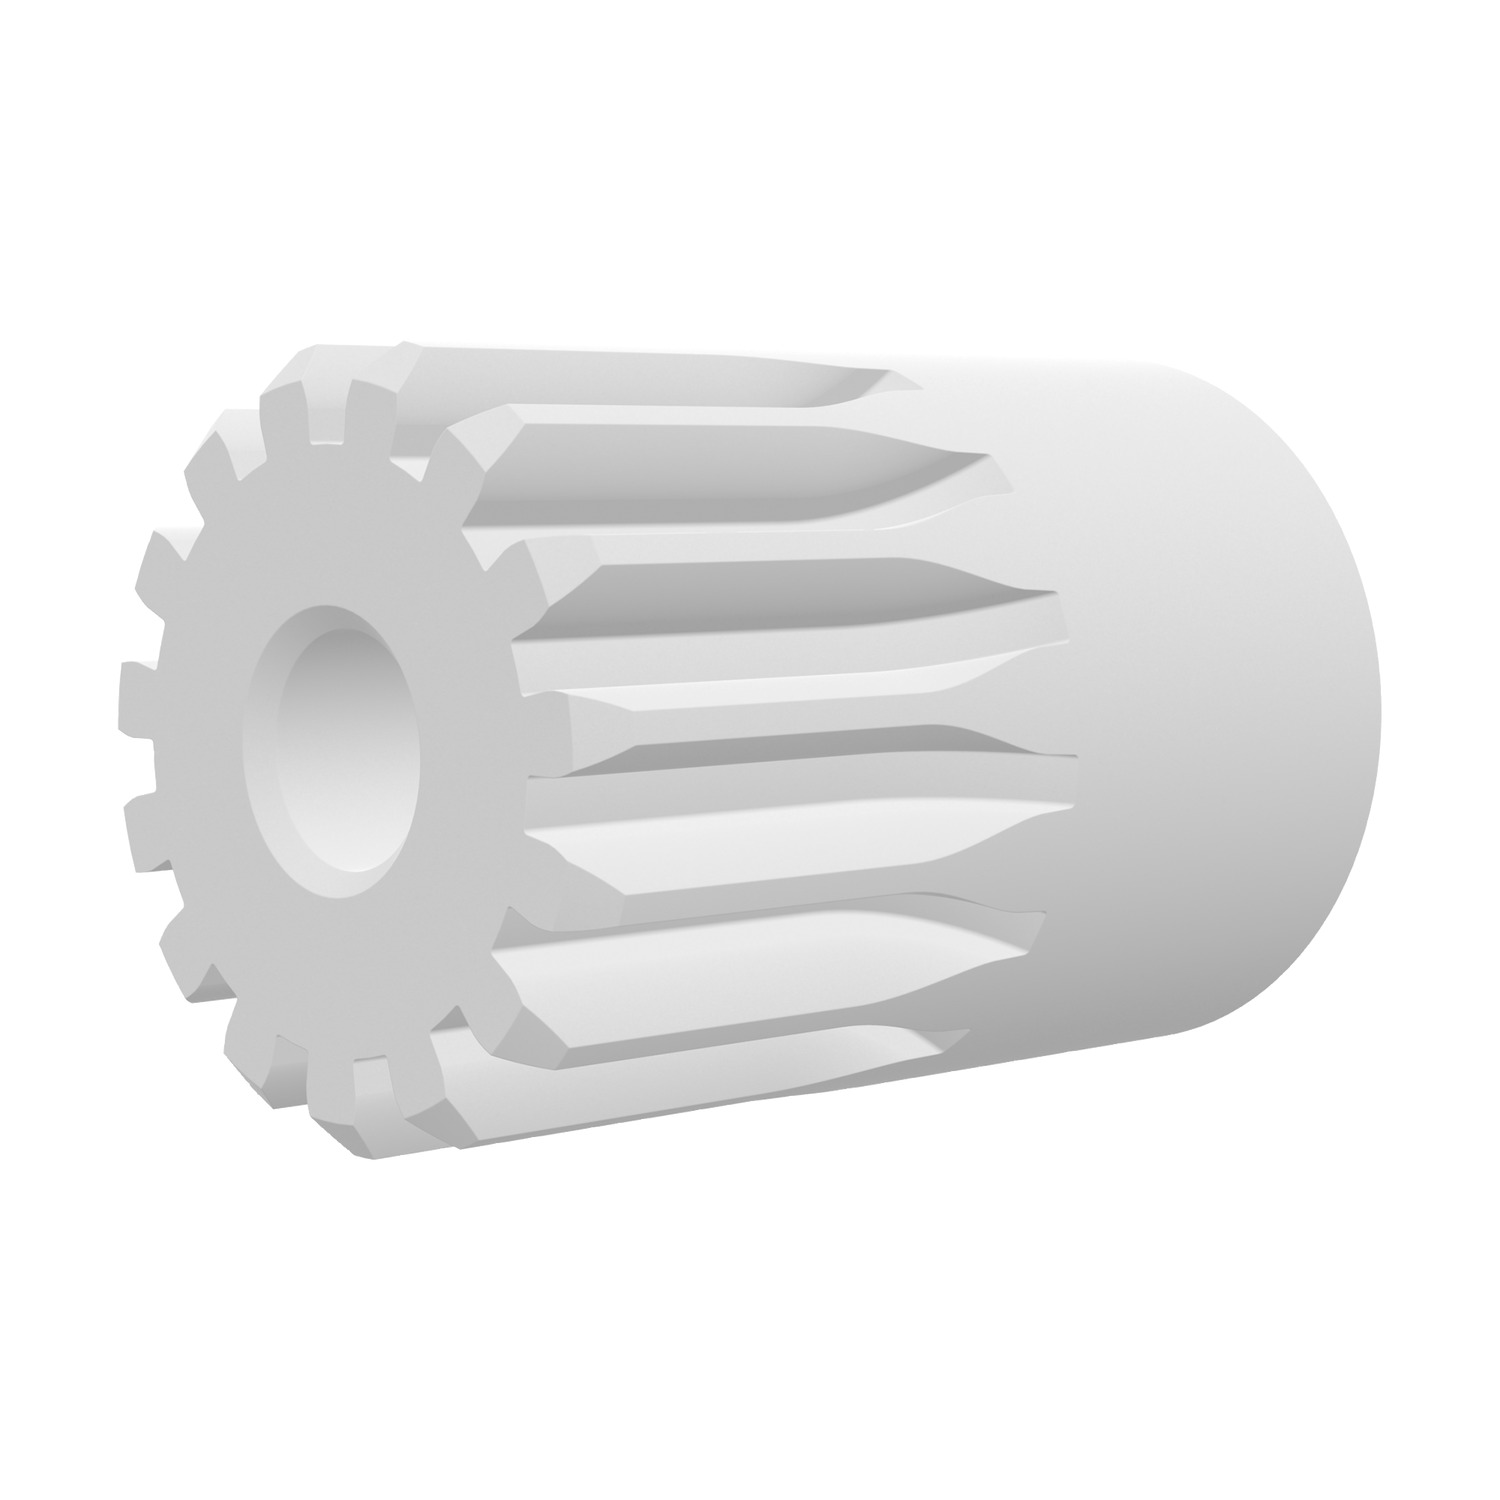 R5148.080-014 Spur Gear - Mod. 0.8 - 14 teeth - white 